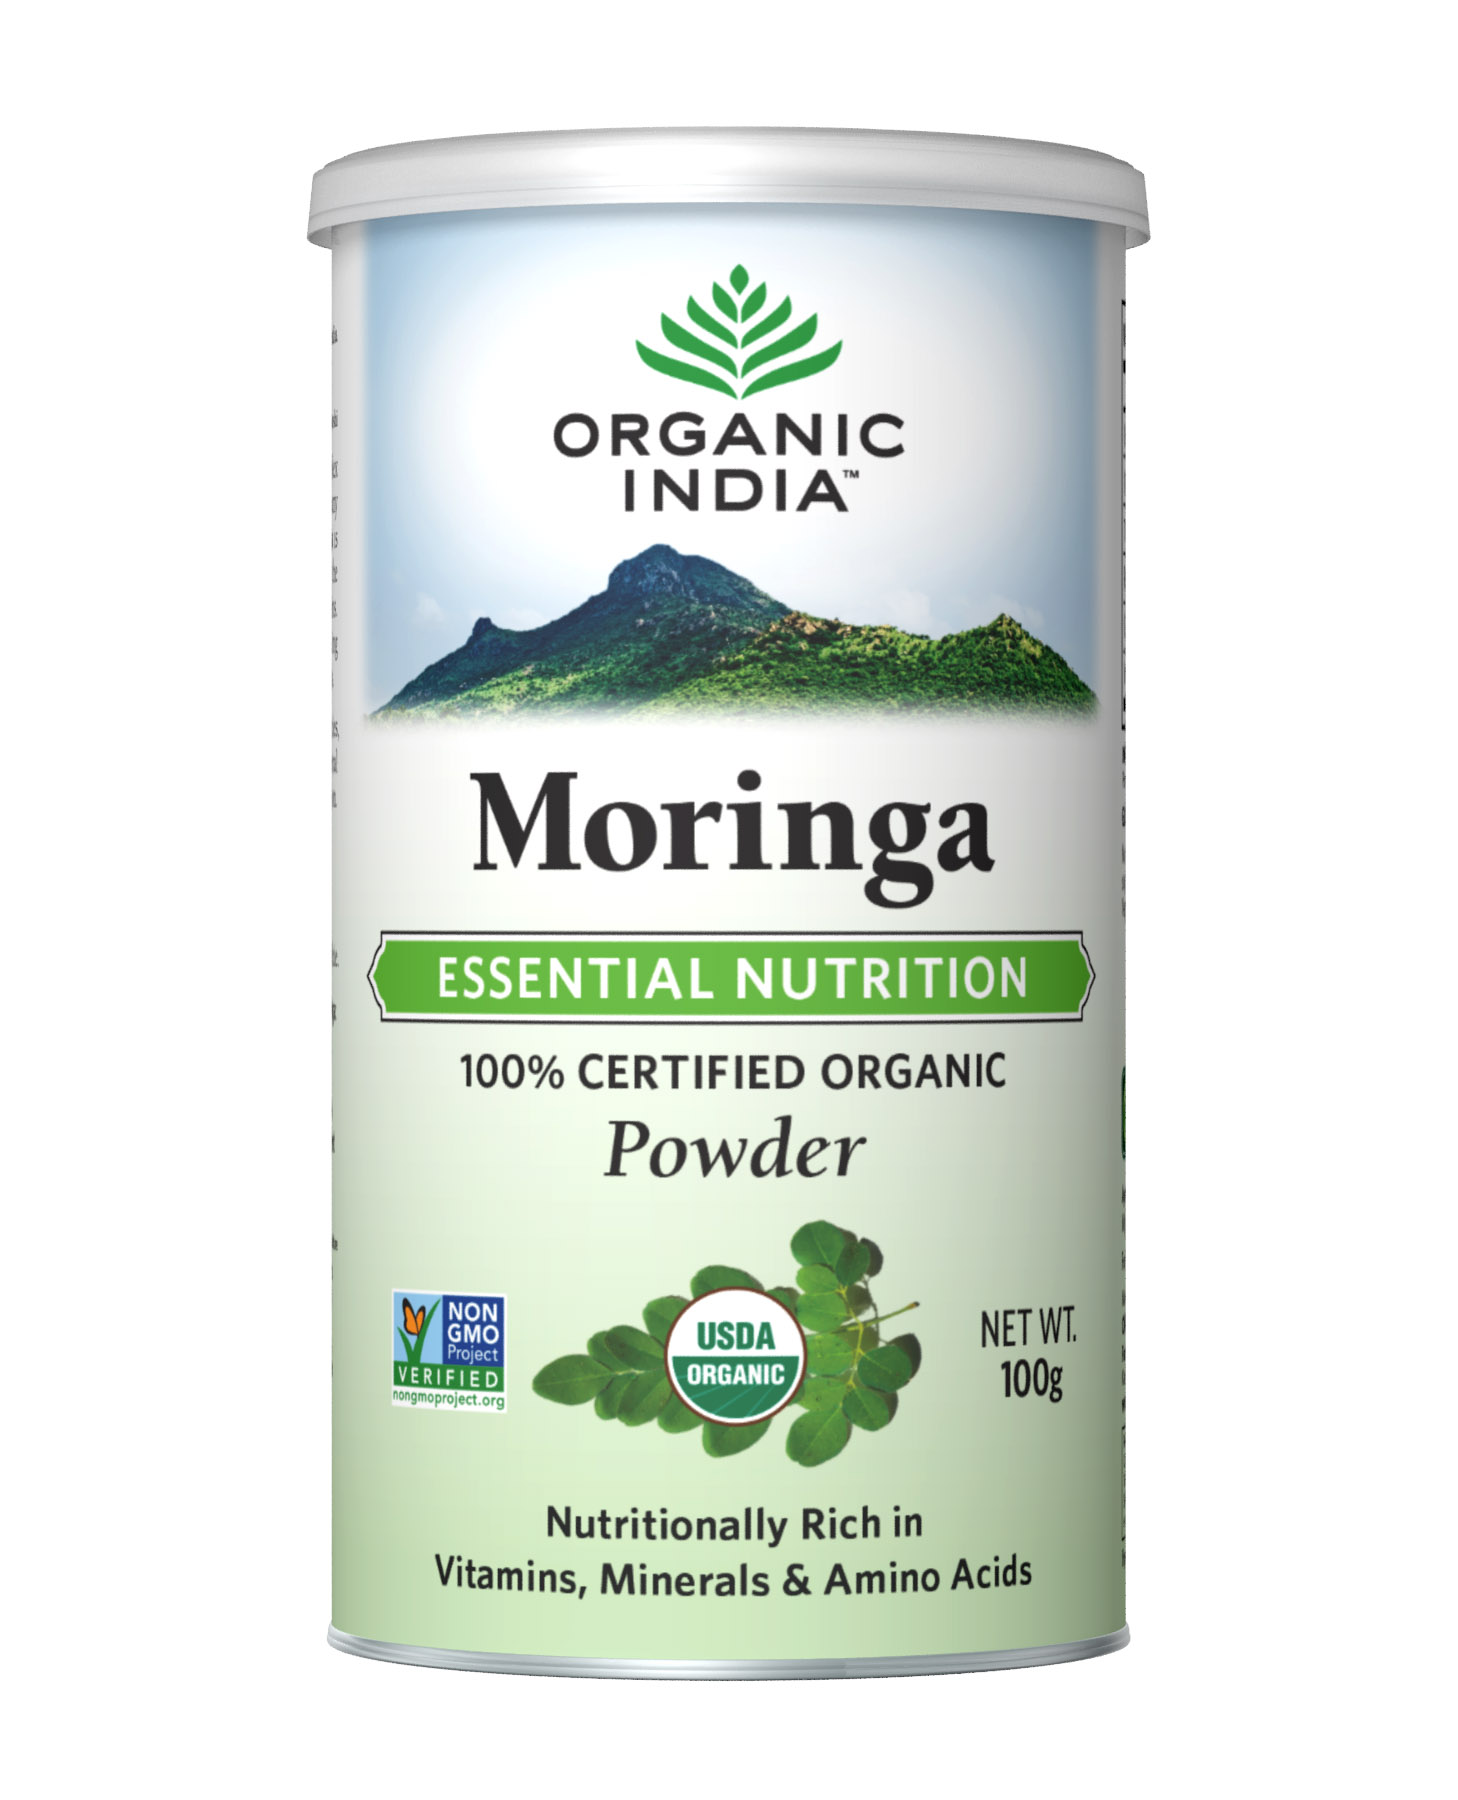 Buy Organic India Moringa Powder at Best Price Online